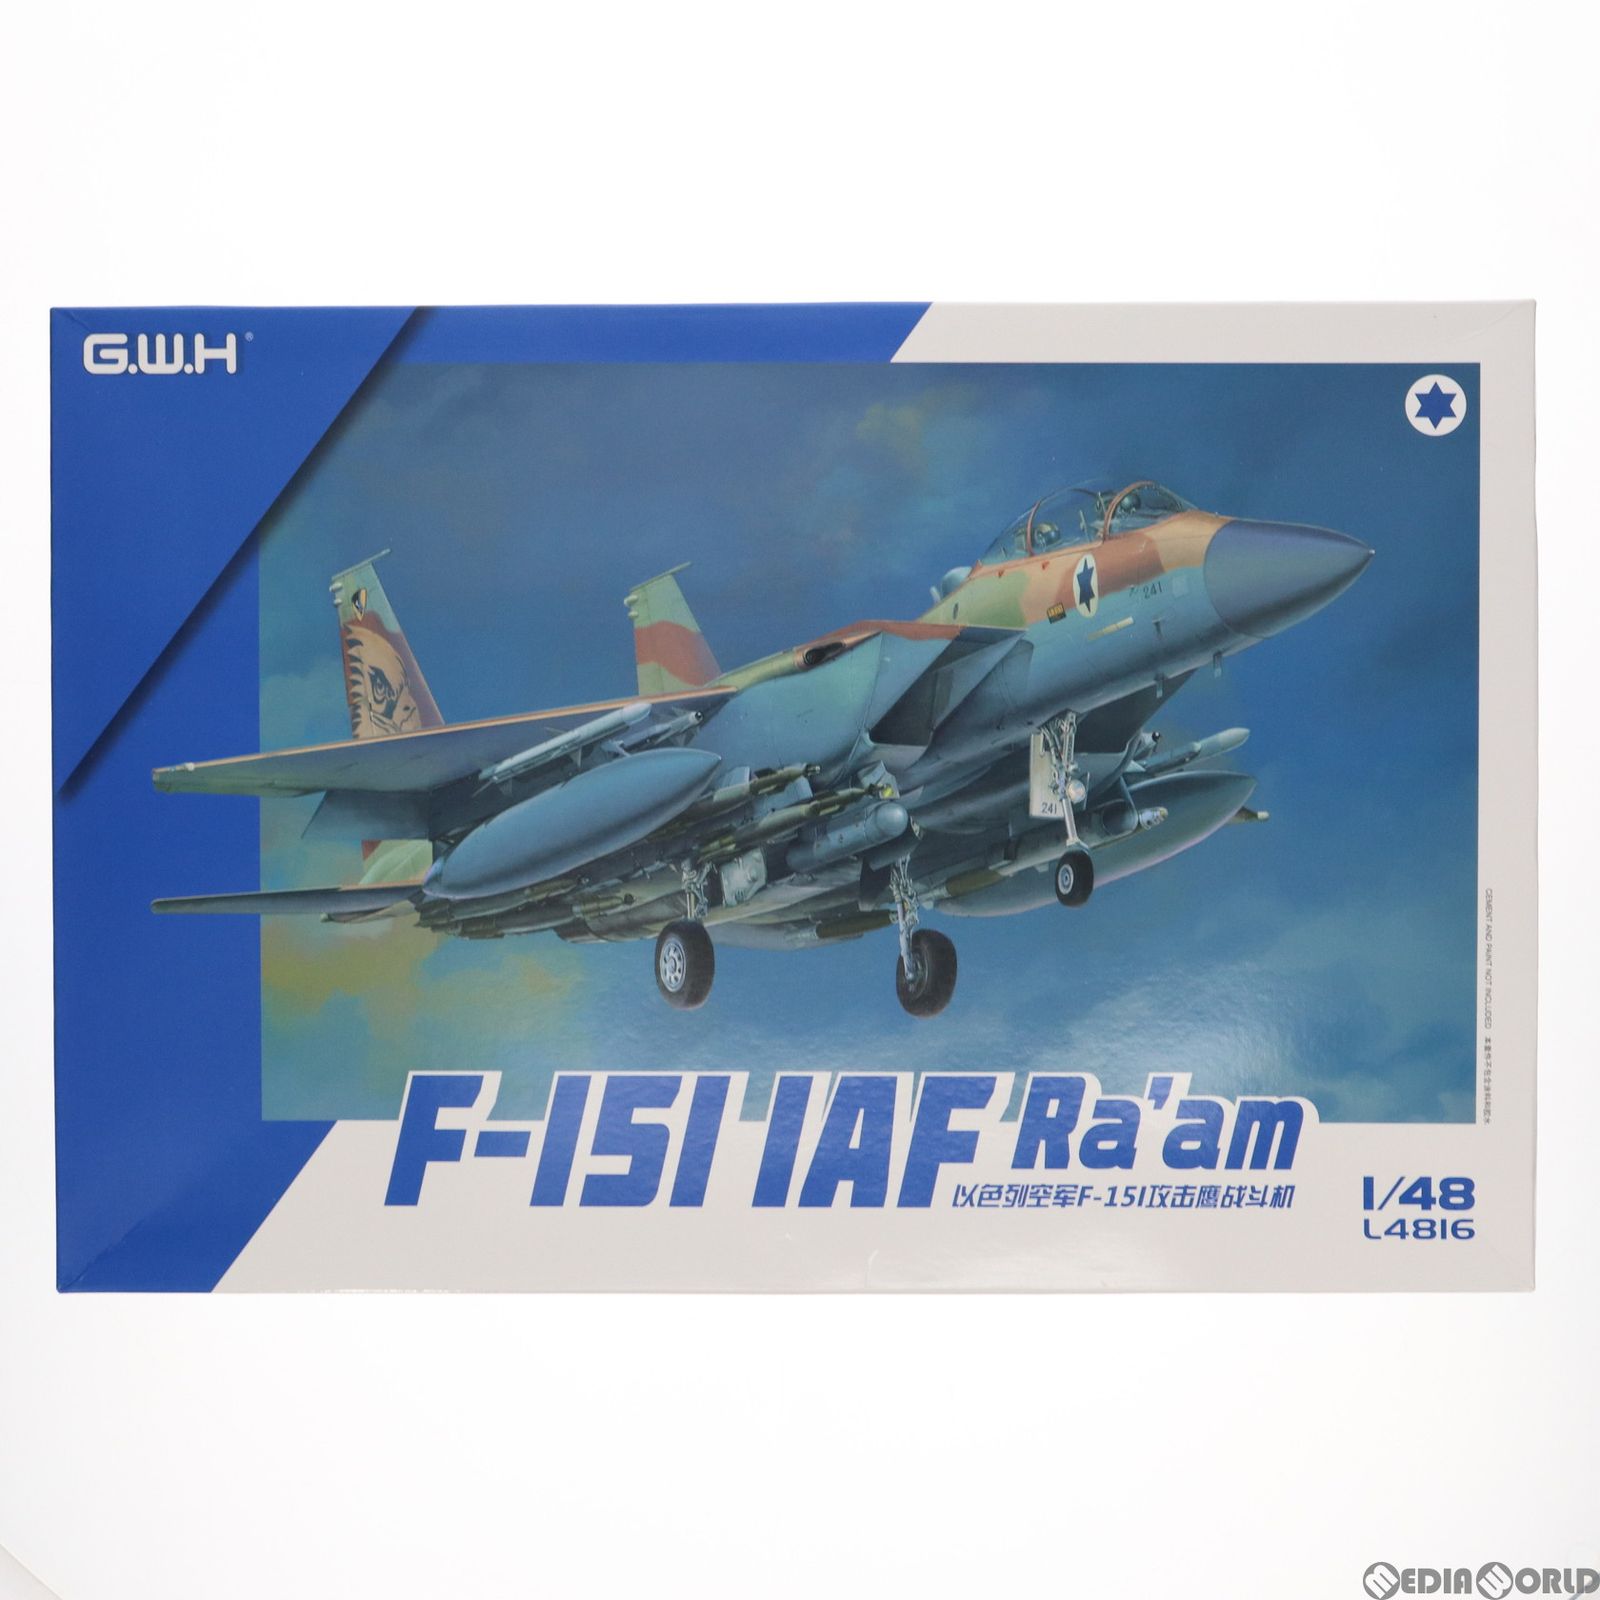 1/48 イスラエル空軍 F-15I ラーム プラモデル(L4816) ピットロード 